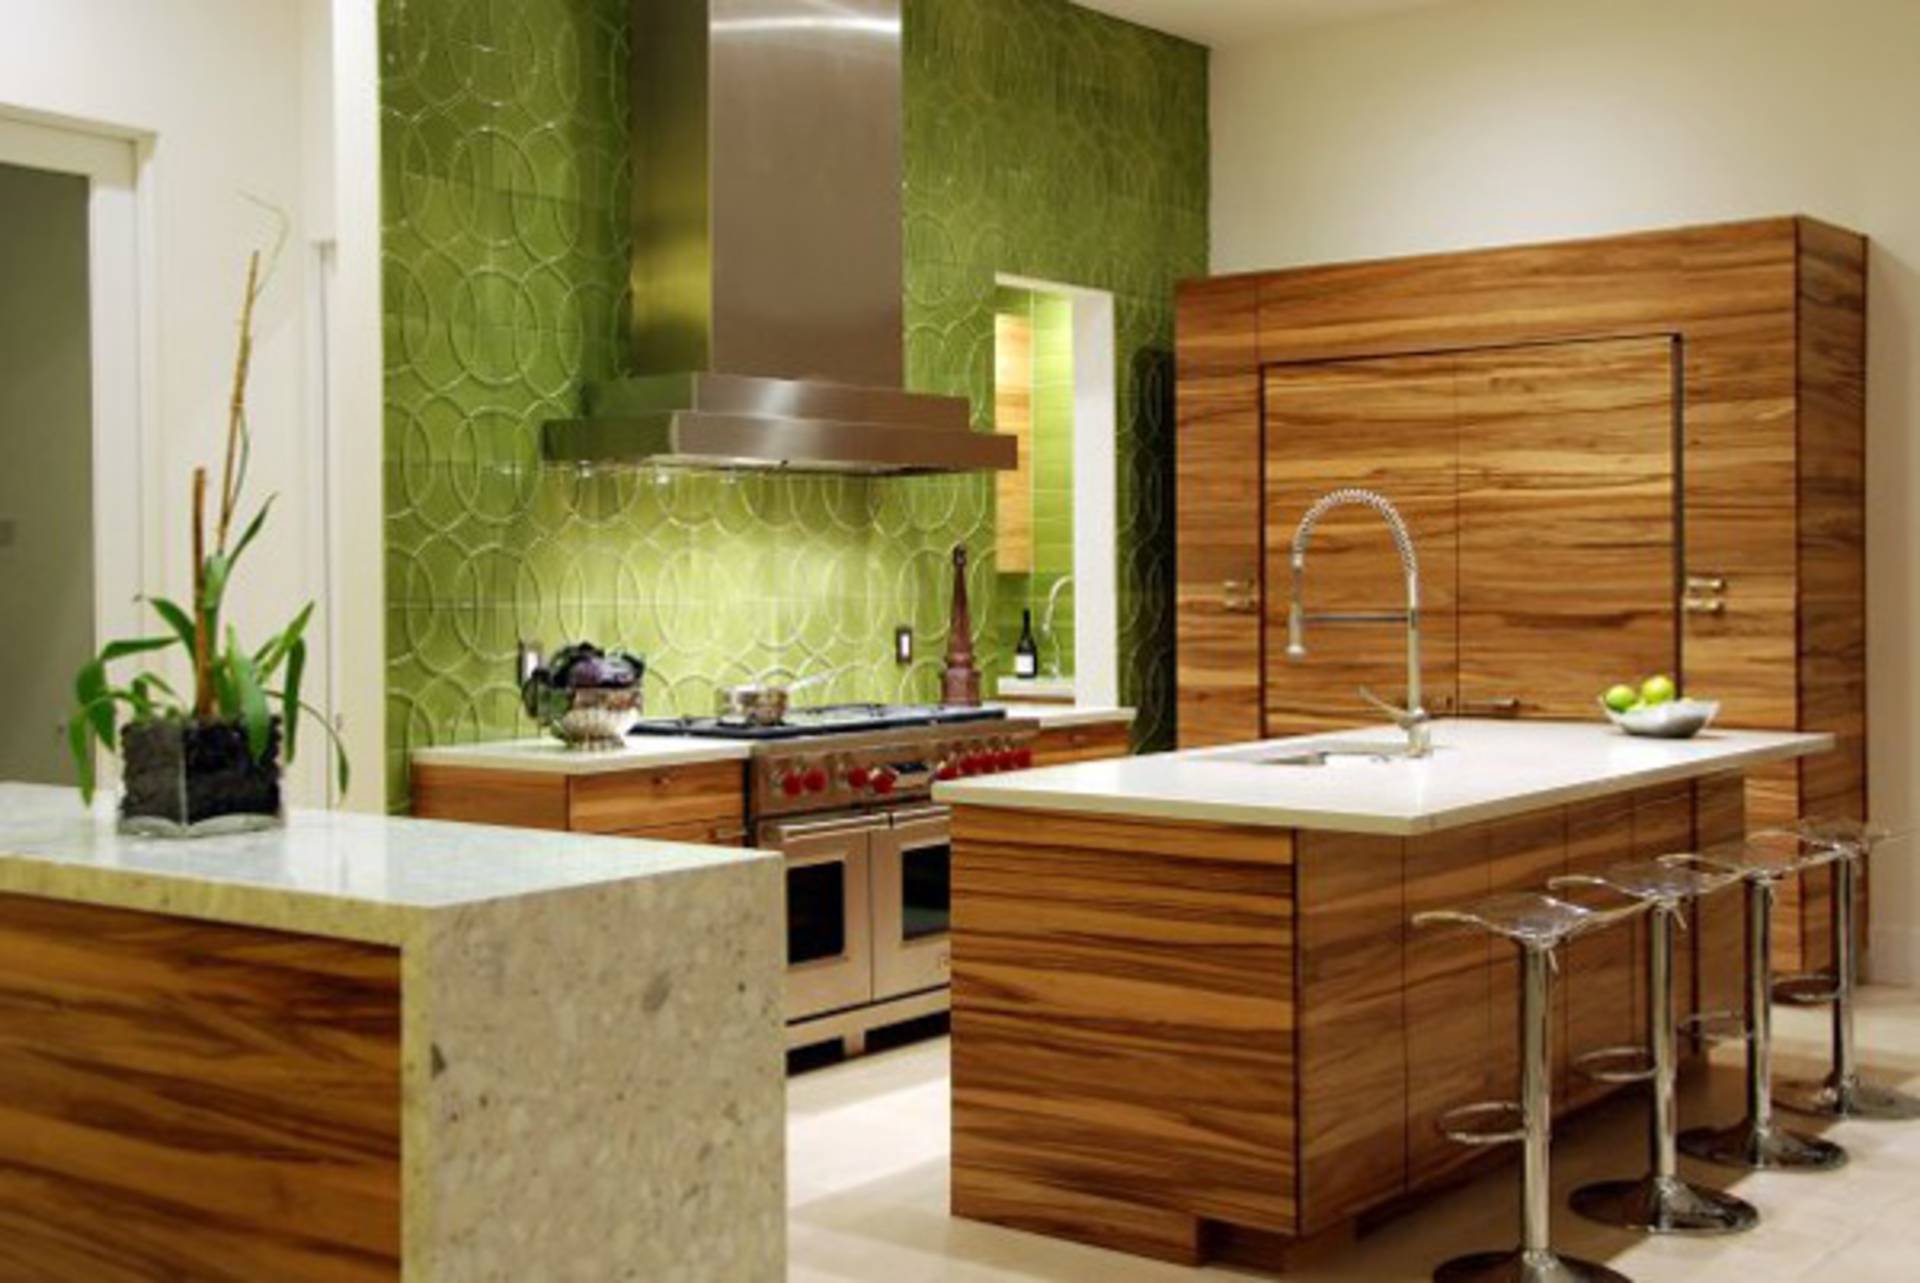 Дизайн кухни с панелями. Гарнитур дерево экостиль. Кухня в эко стиле. Дерево в интерьере кухни. Кухня в сочетании с деревом.